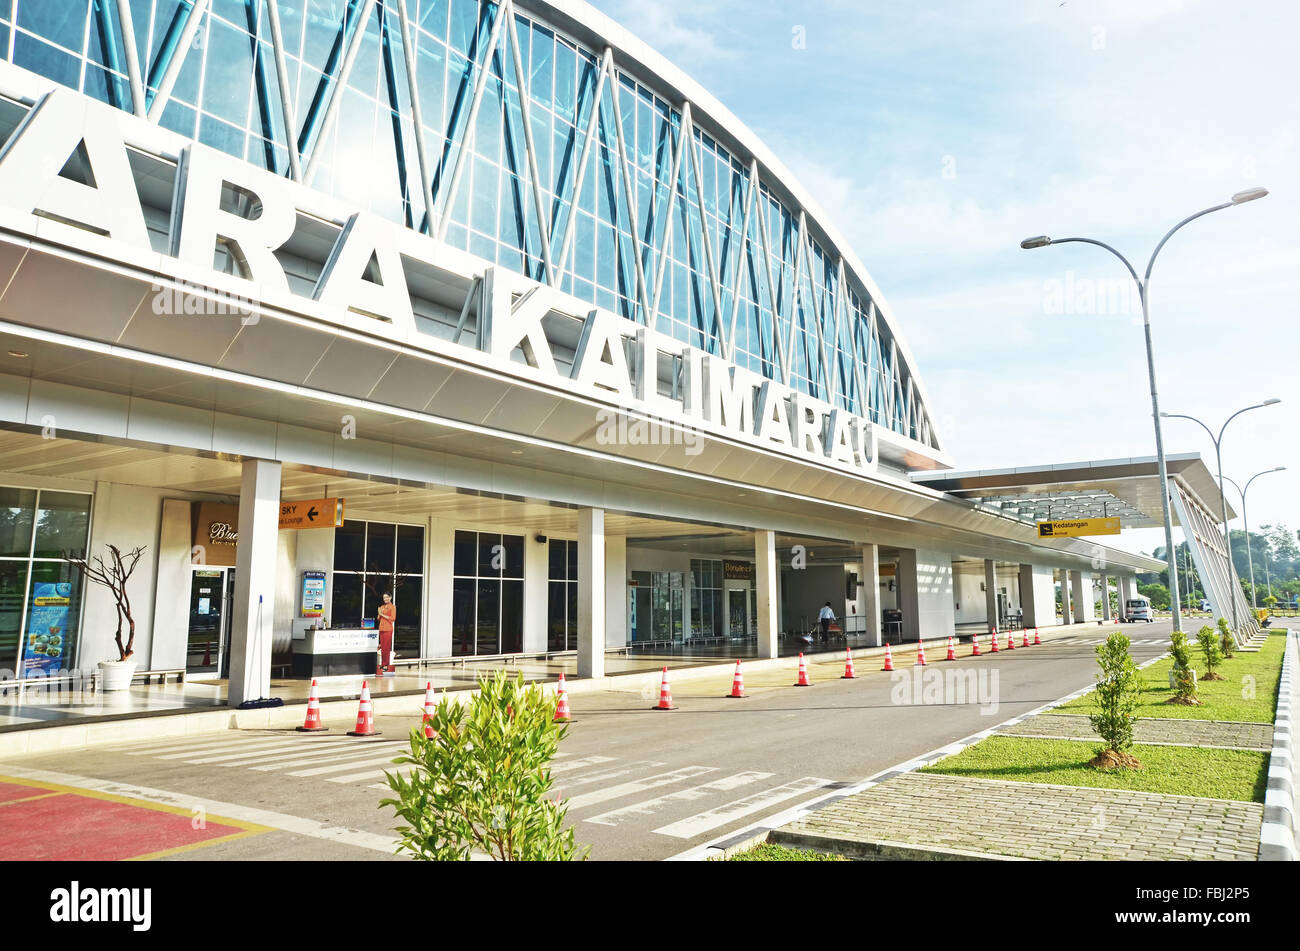 Kalimarau airport in Berau Stock Photo